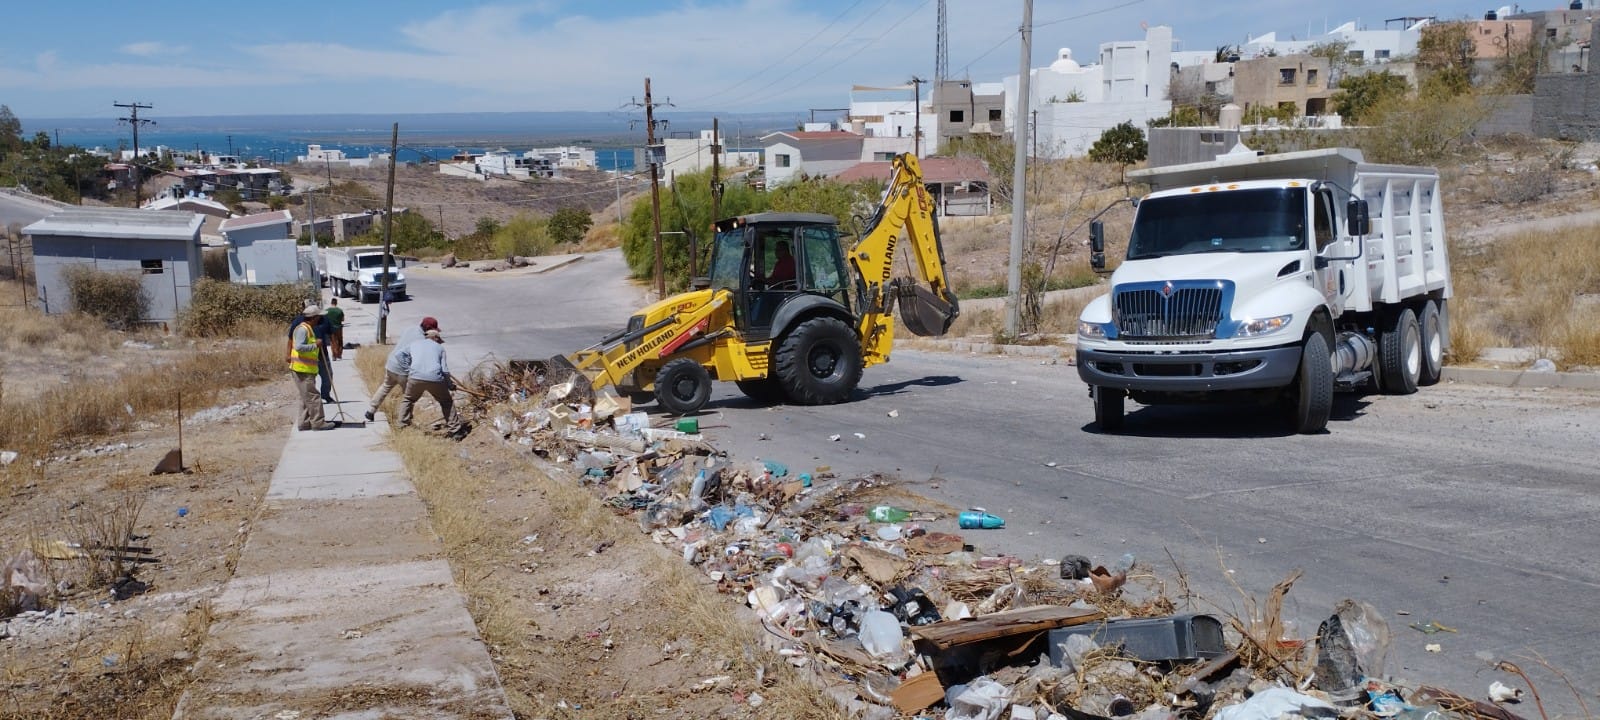 Servicios Públicos limpia los accesos en colonia El Pedregal